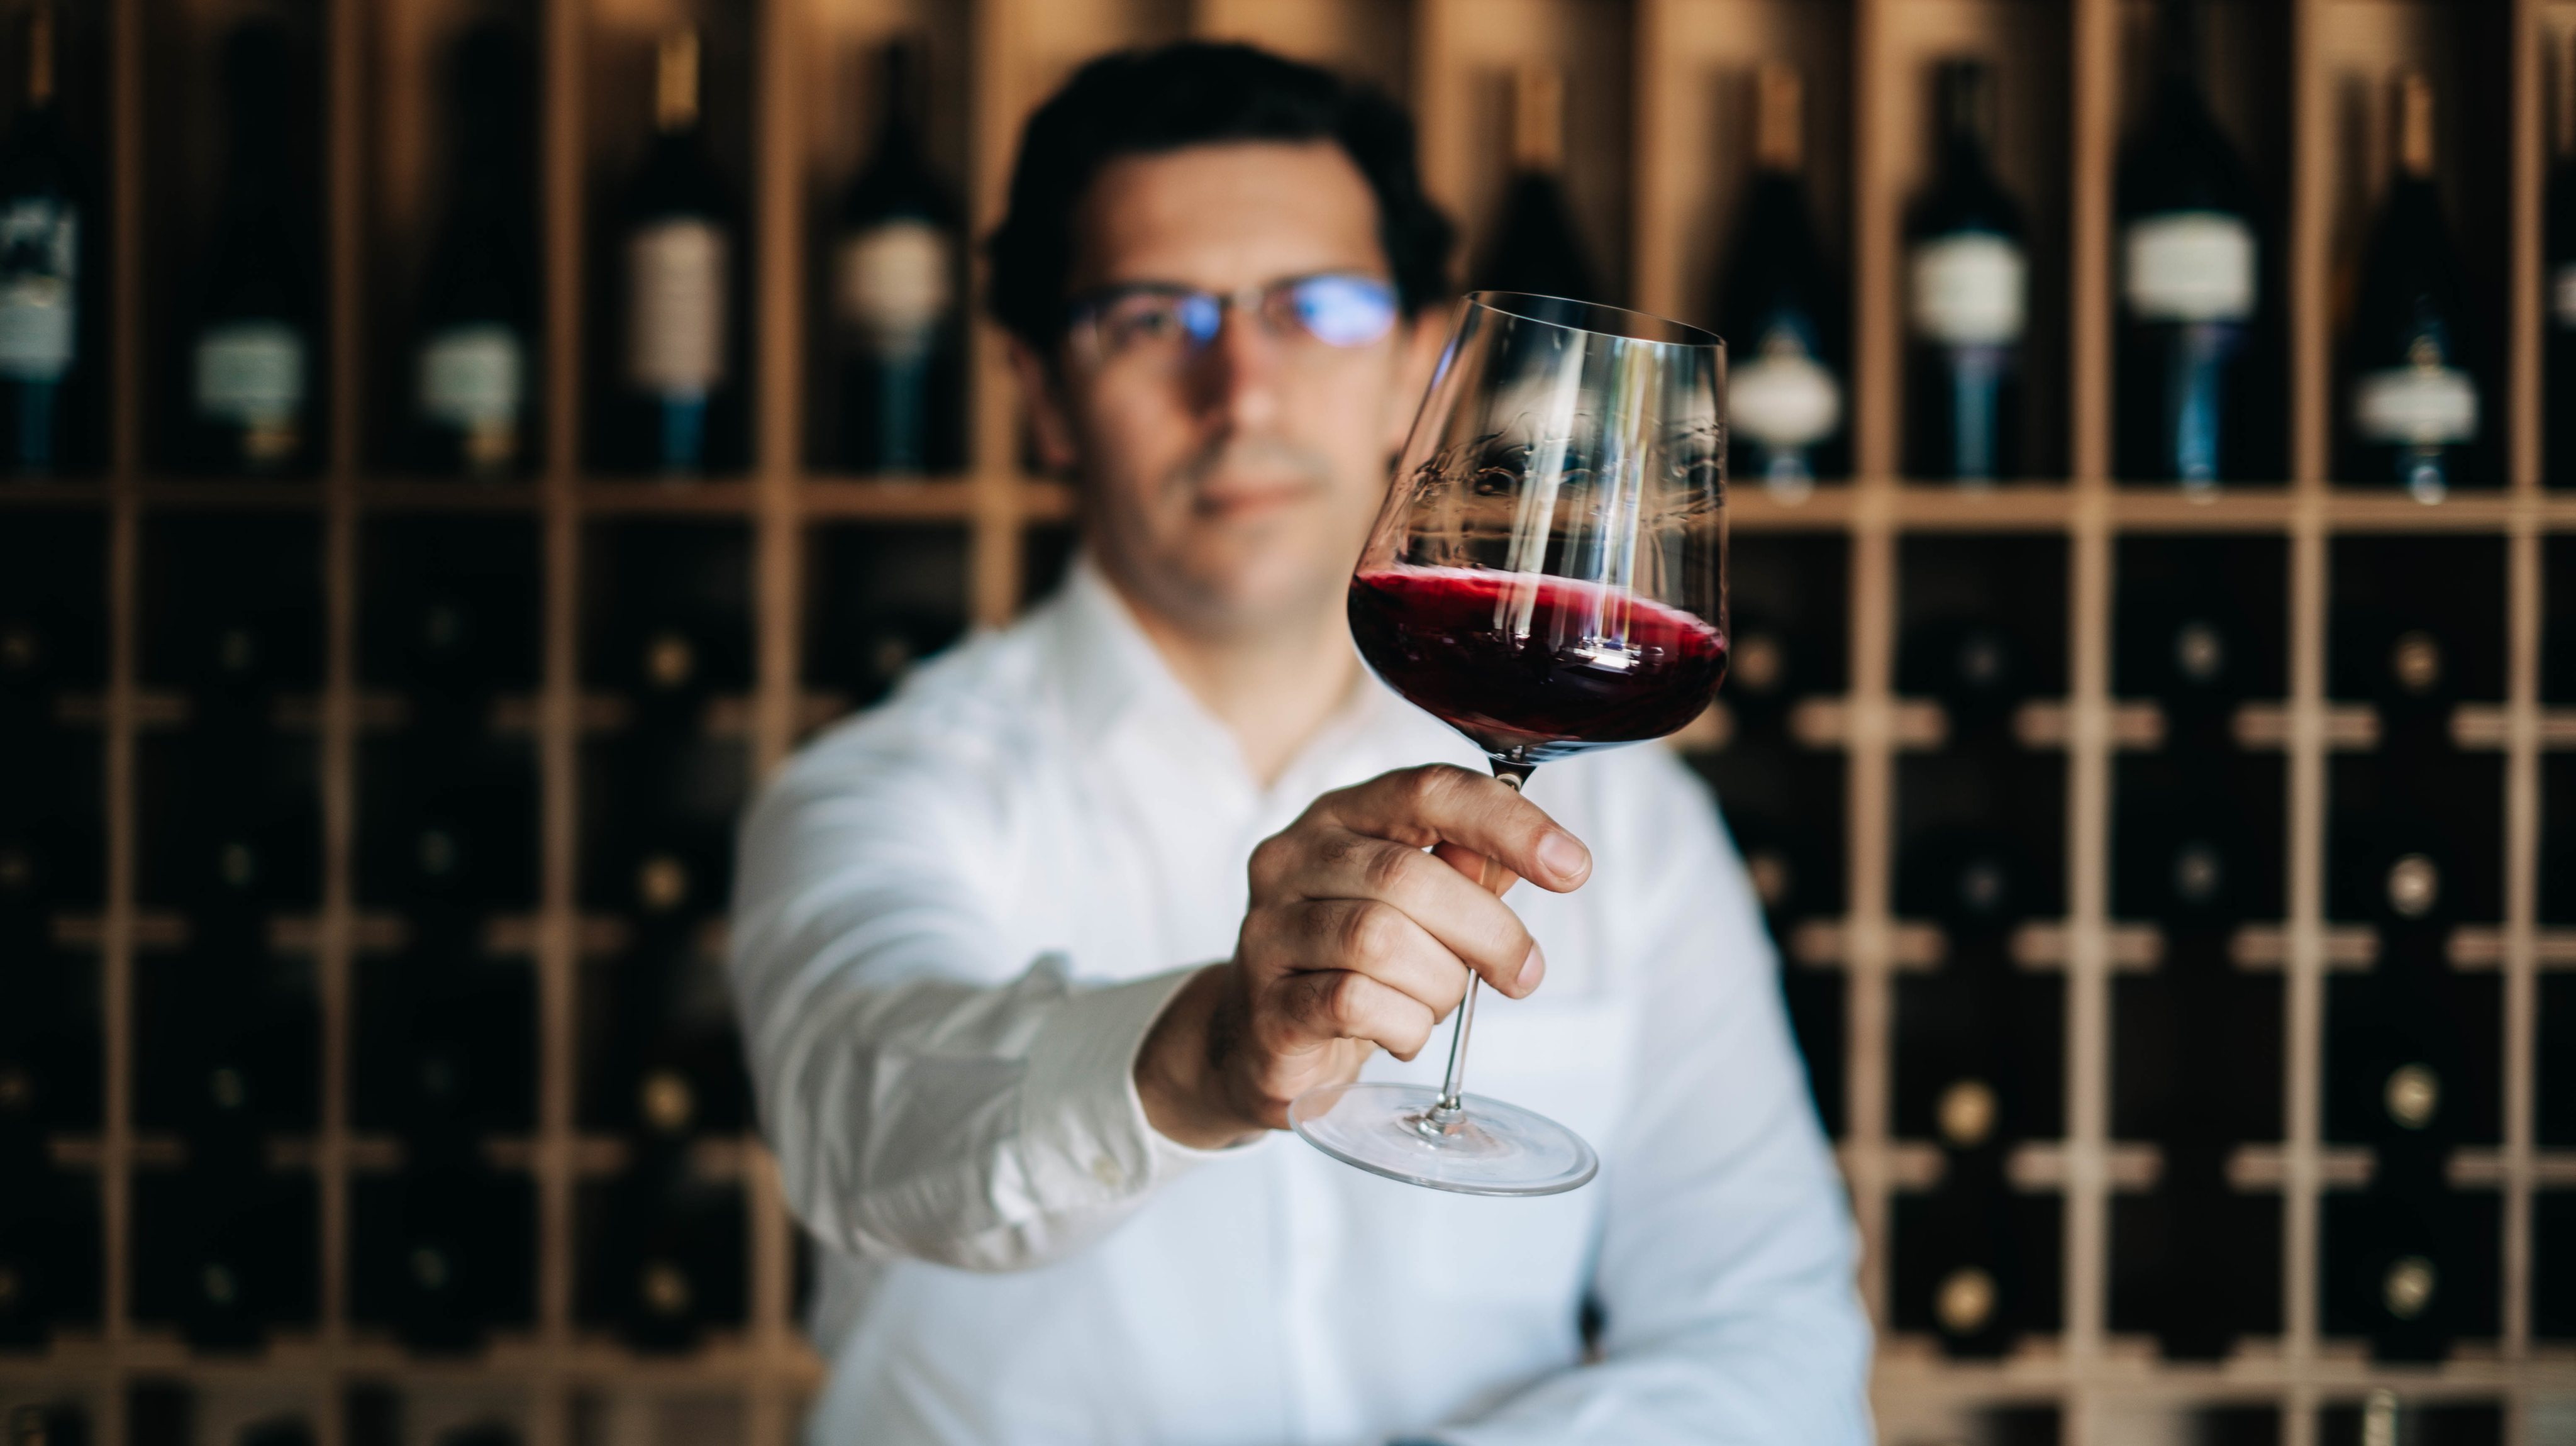 França permaneceu o primeiro país exportador mundial de vinho em valor, com 8,7 mil milhões de euros em vendas